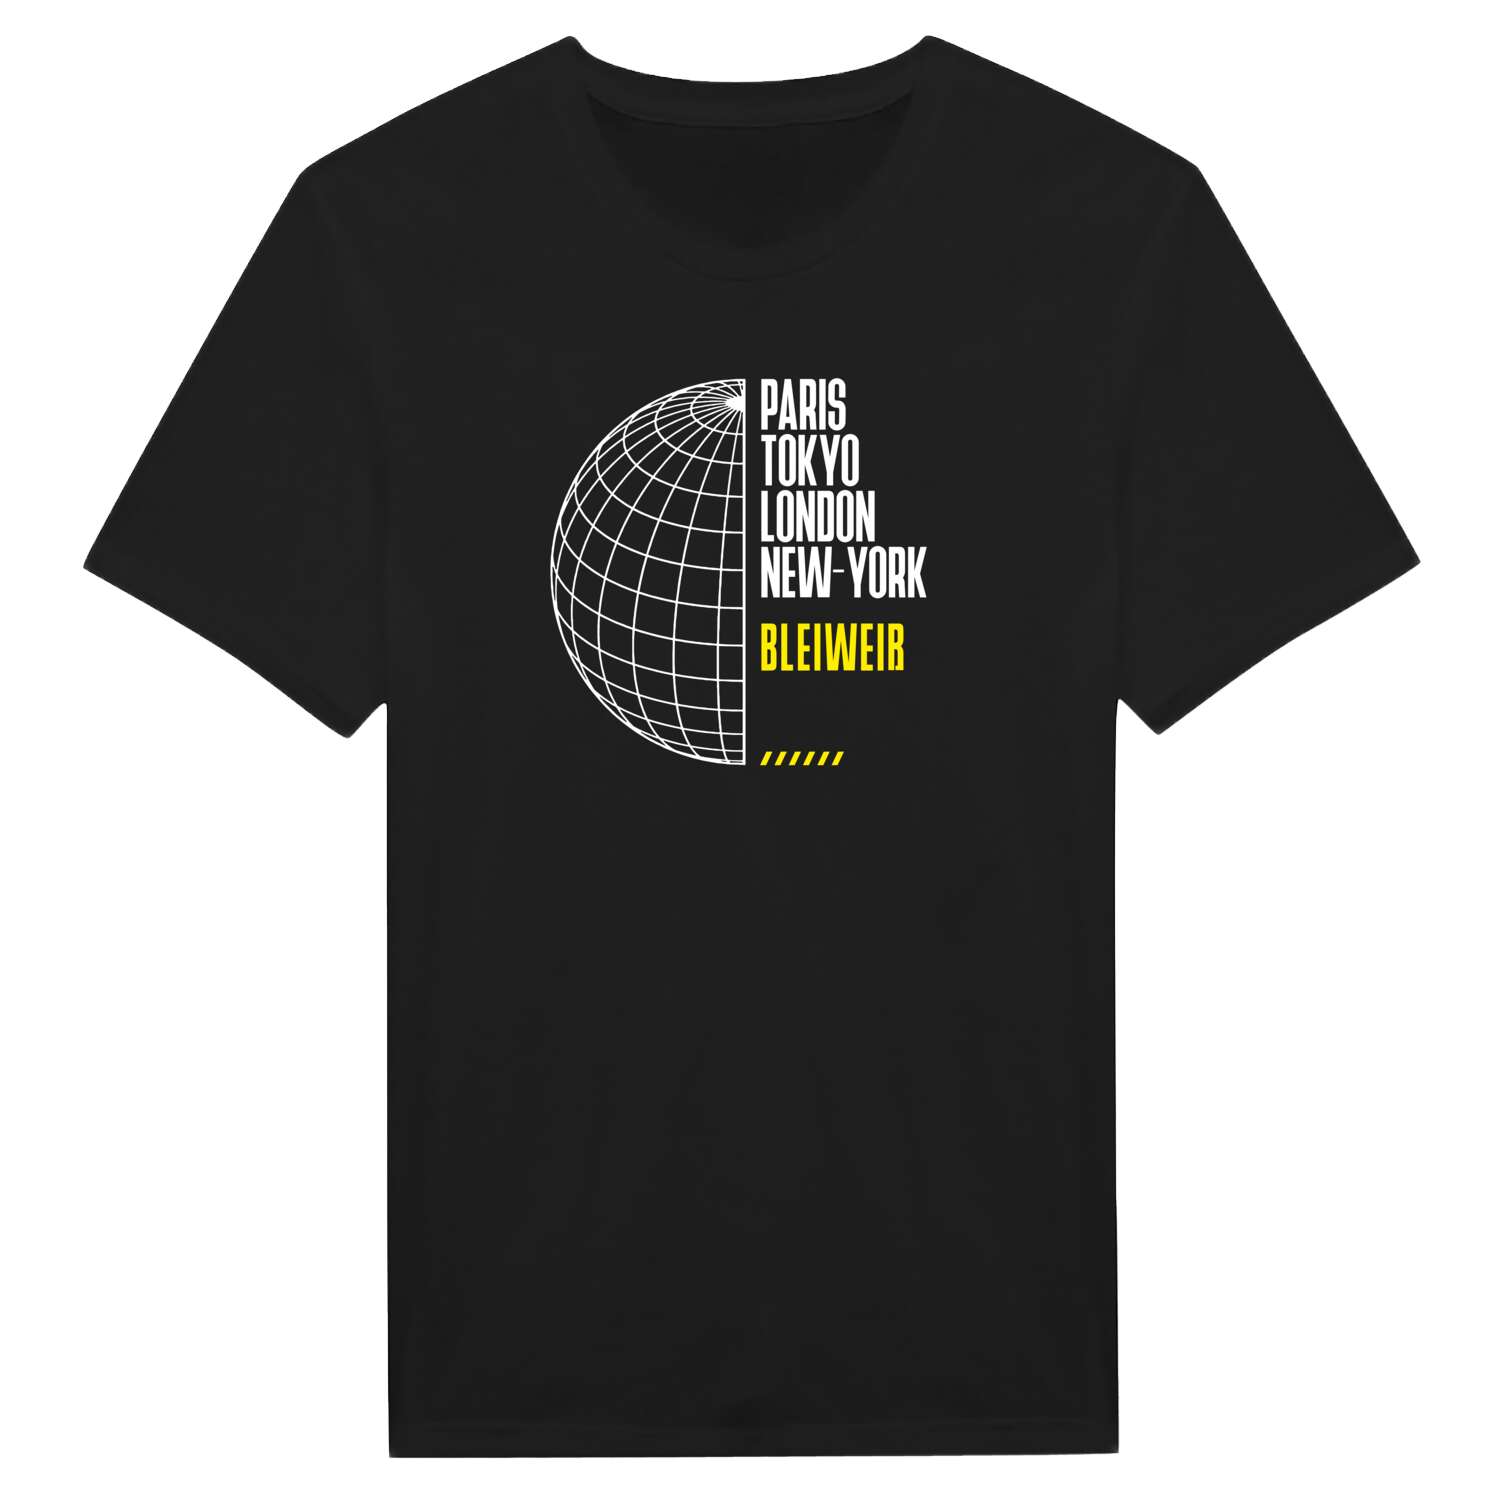 Bleiweiß T-Shirt »Paris Tokyo London«